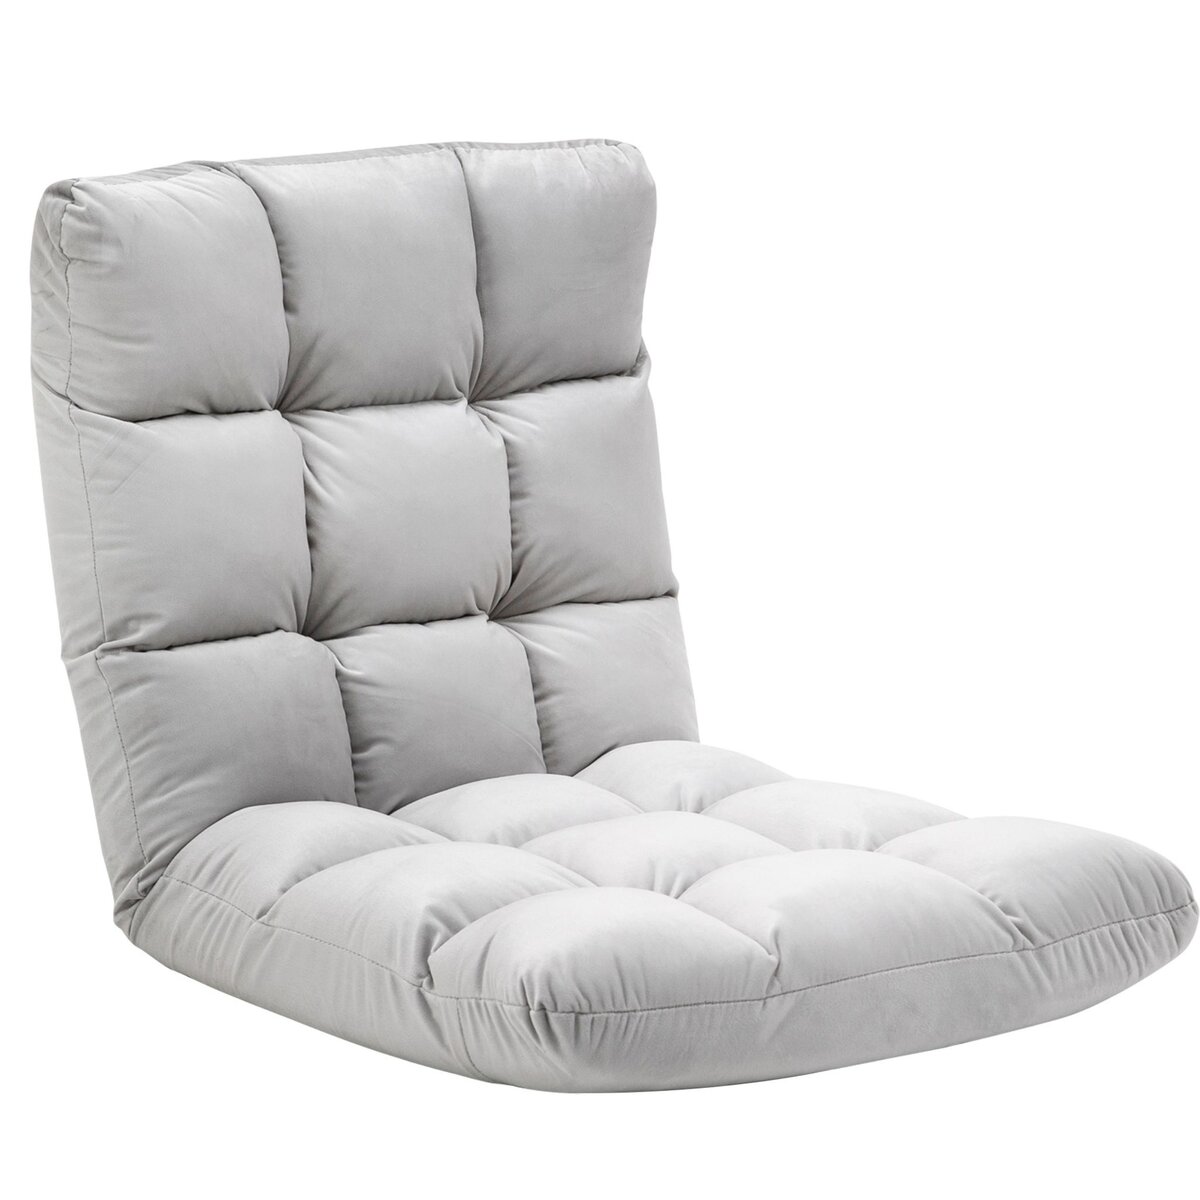 HOMCOM Fauteuil convertible fauteuil paresseux grand confort inclinaison dossier multipositions 90°-180° flanelle polyester capitonné gris clair